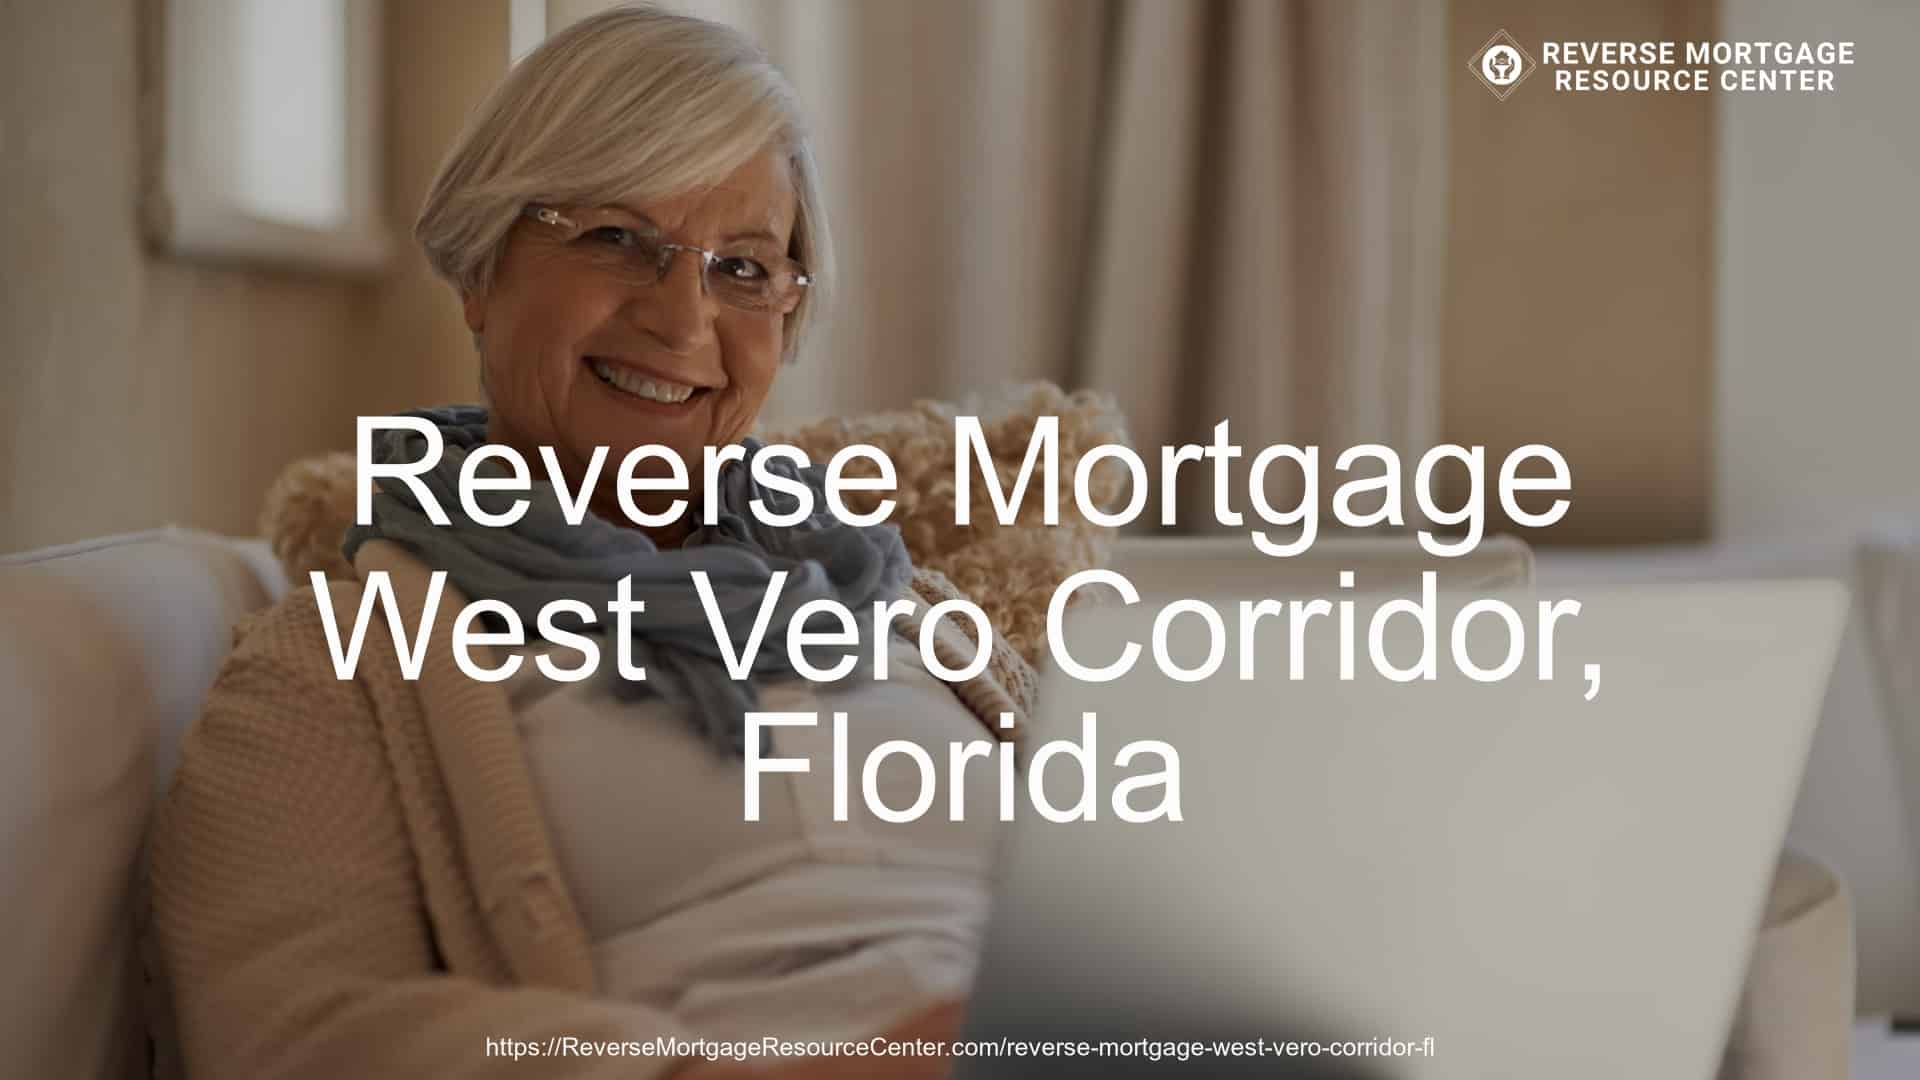 Reverse Mortgage Loans in West Vero Corridor Florida